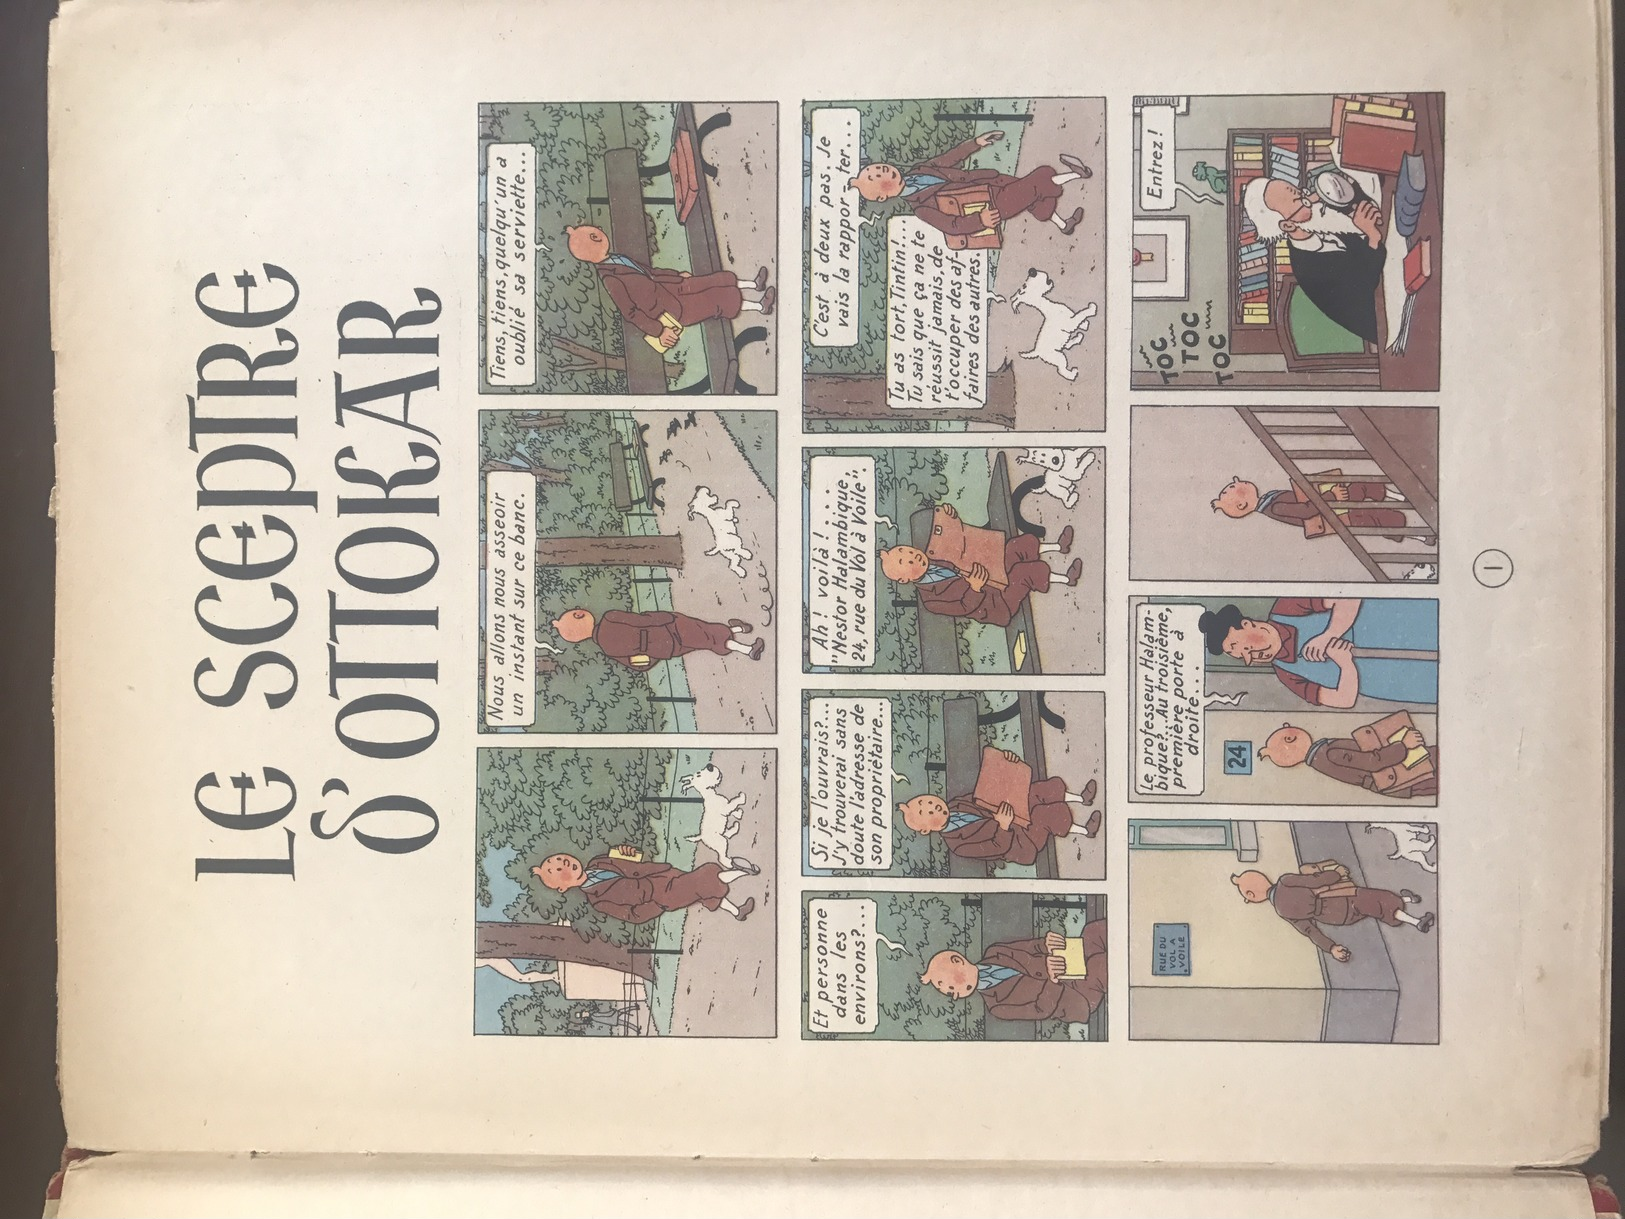 Le Sceptre D'Ottokar - Edition 1947 - Tintin